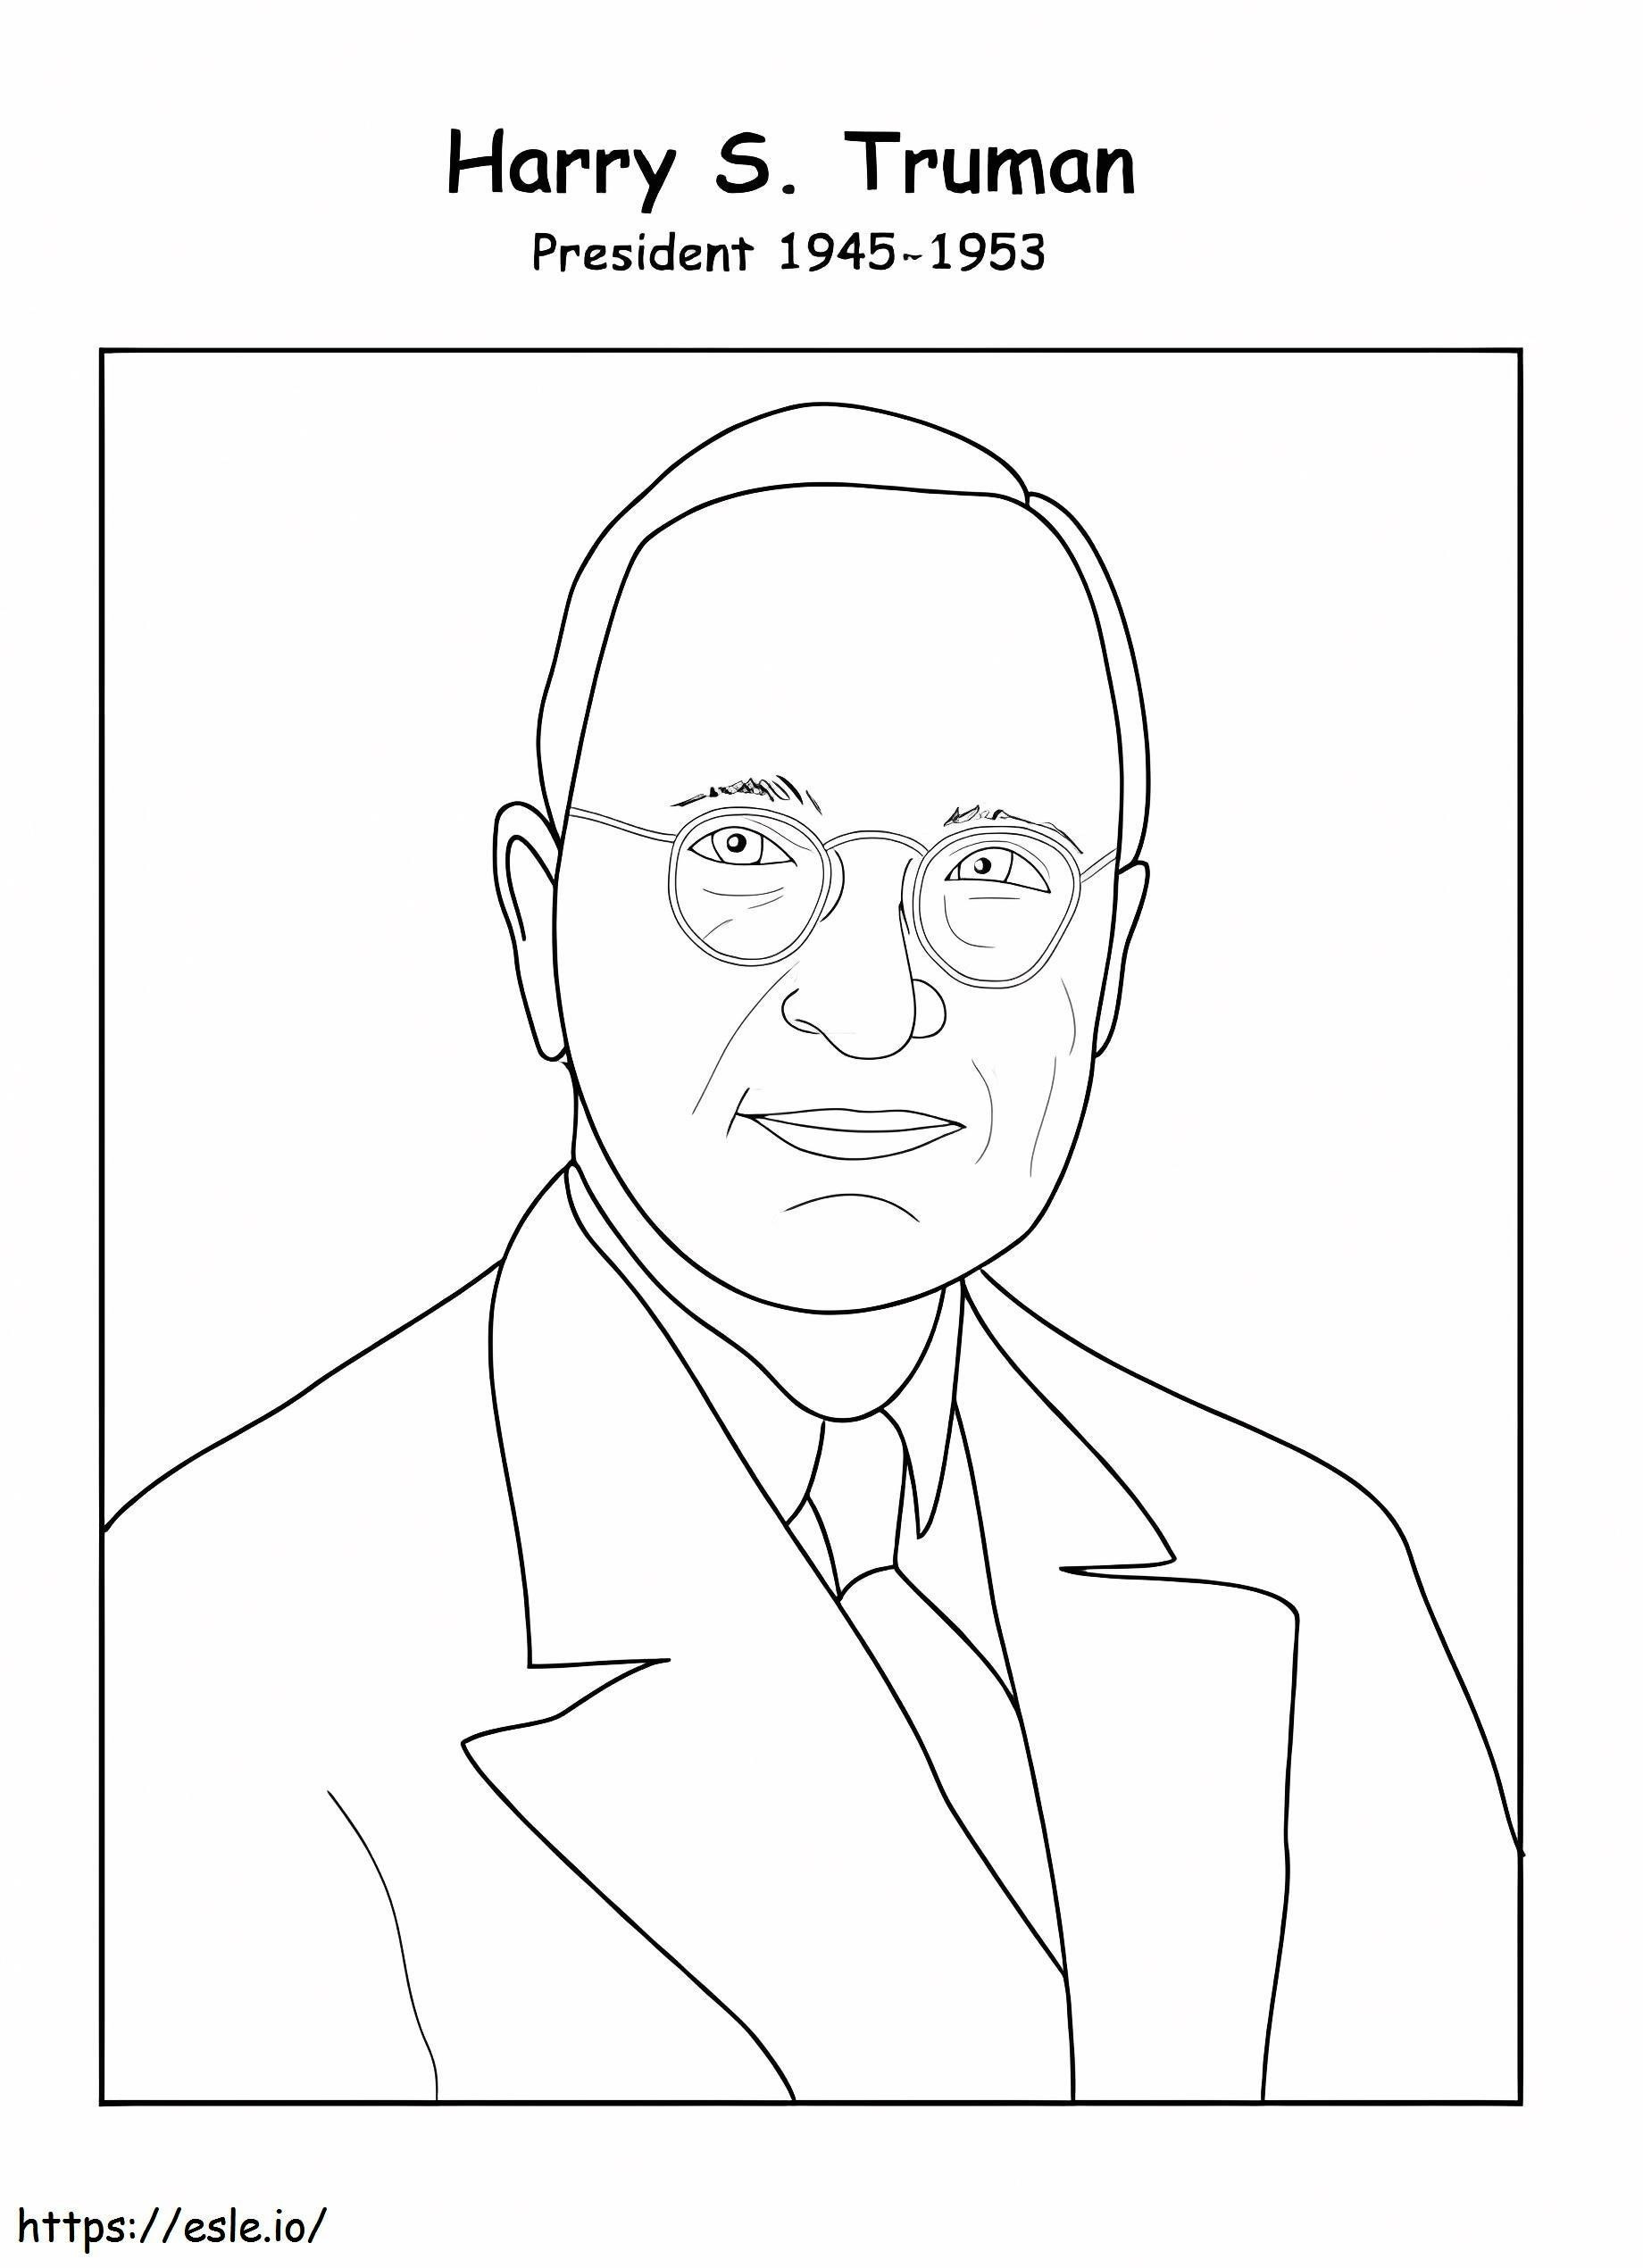 Kostenloser Druck von Harry S. Truman ausmalbilder